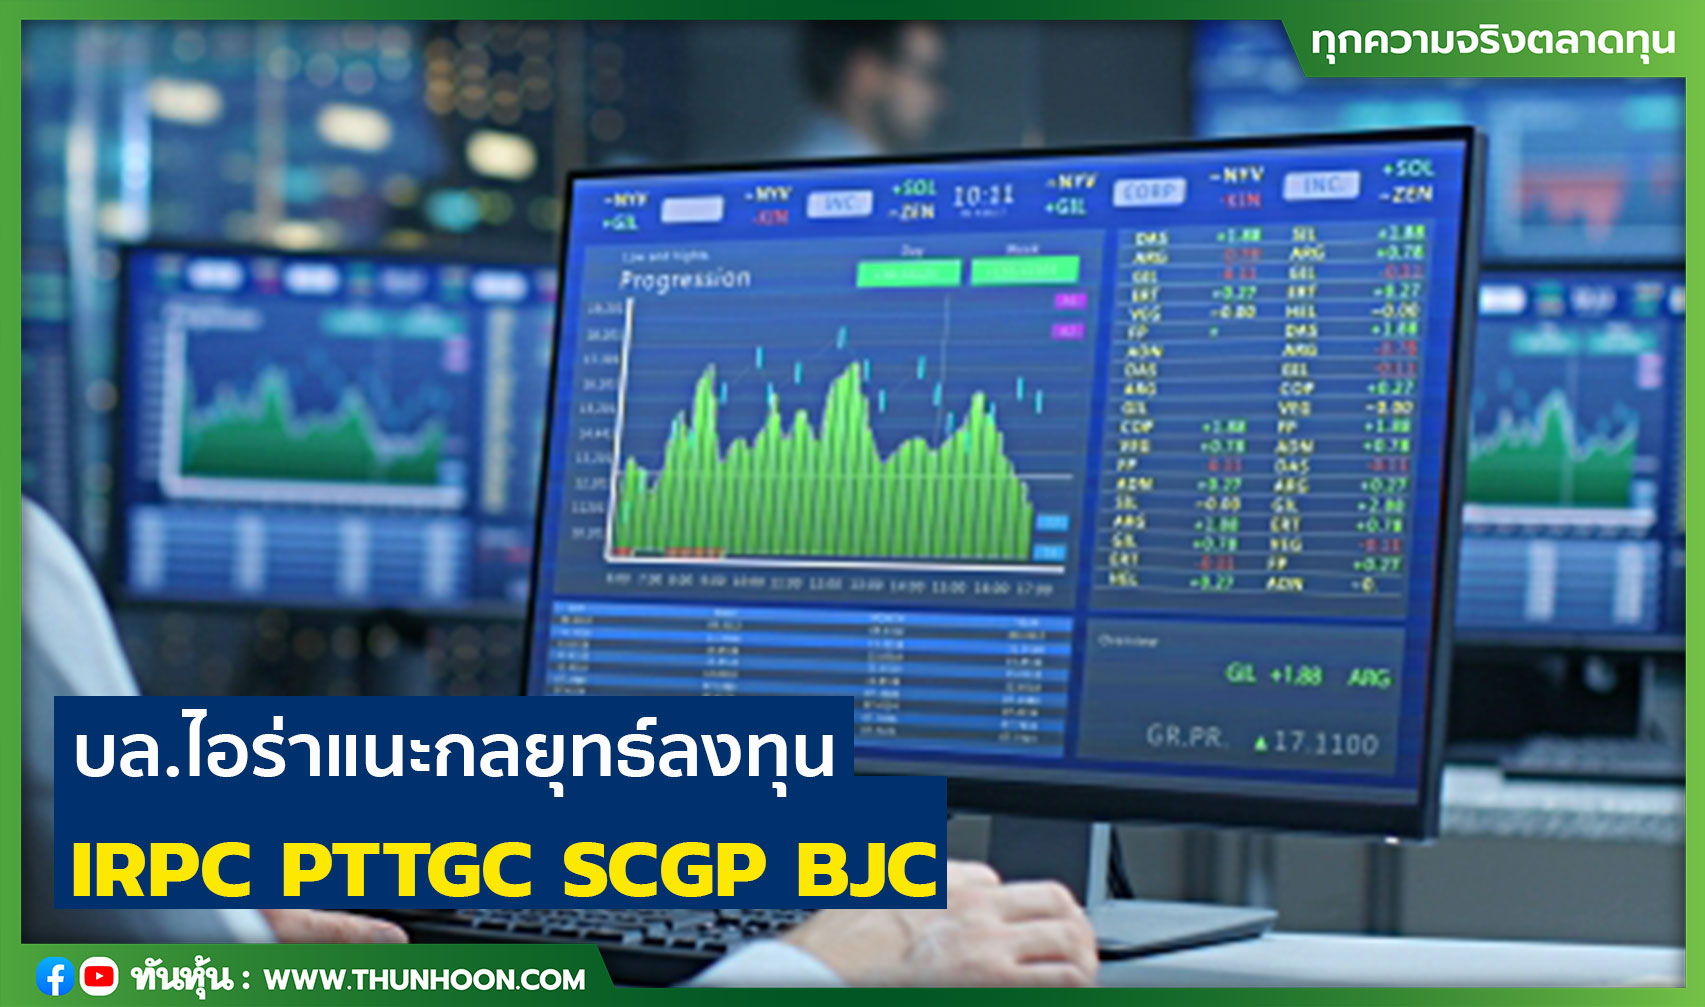 บล.ไอร่าแนะกลยุทธ์ลงทุน  IRPC  PTTGC  SCGP  BJC 